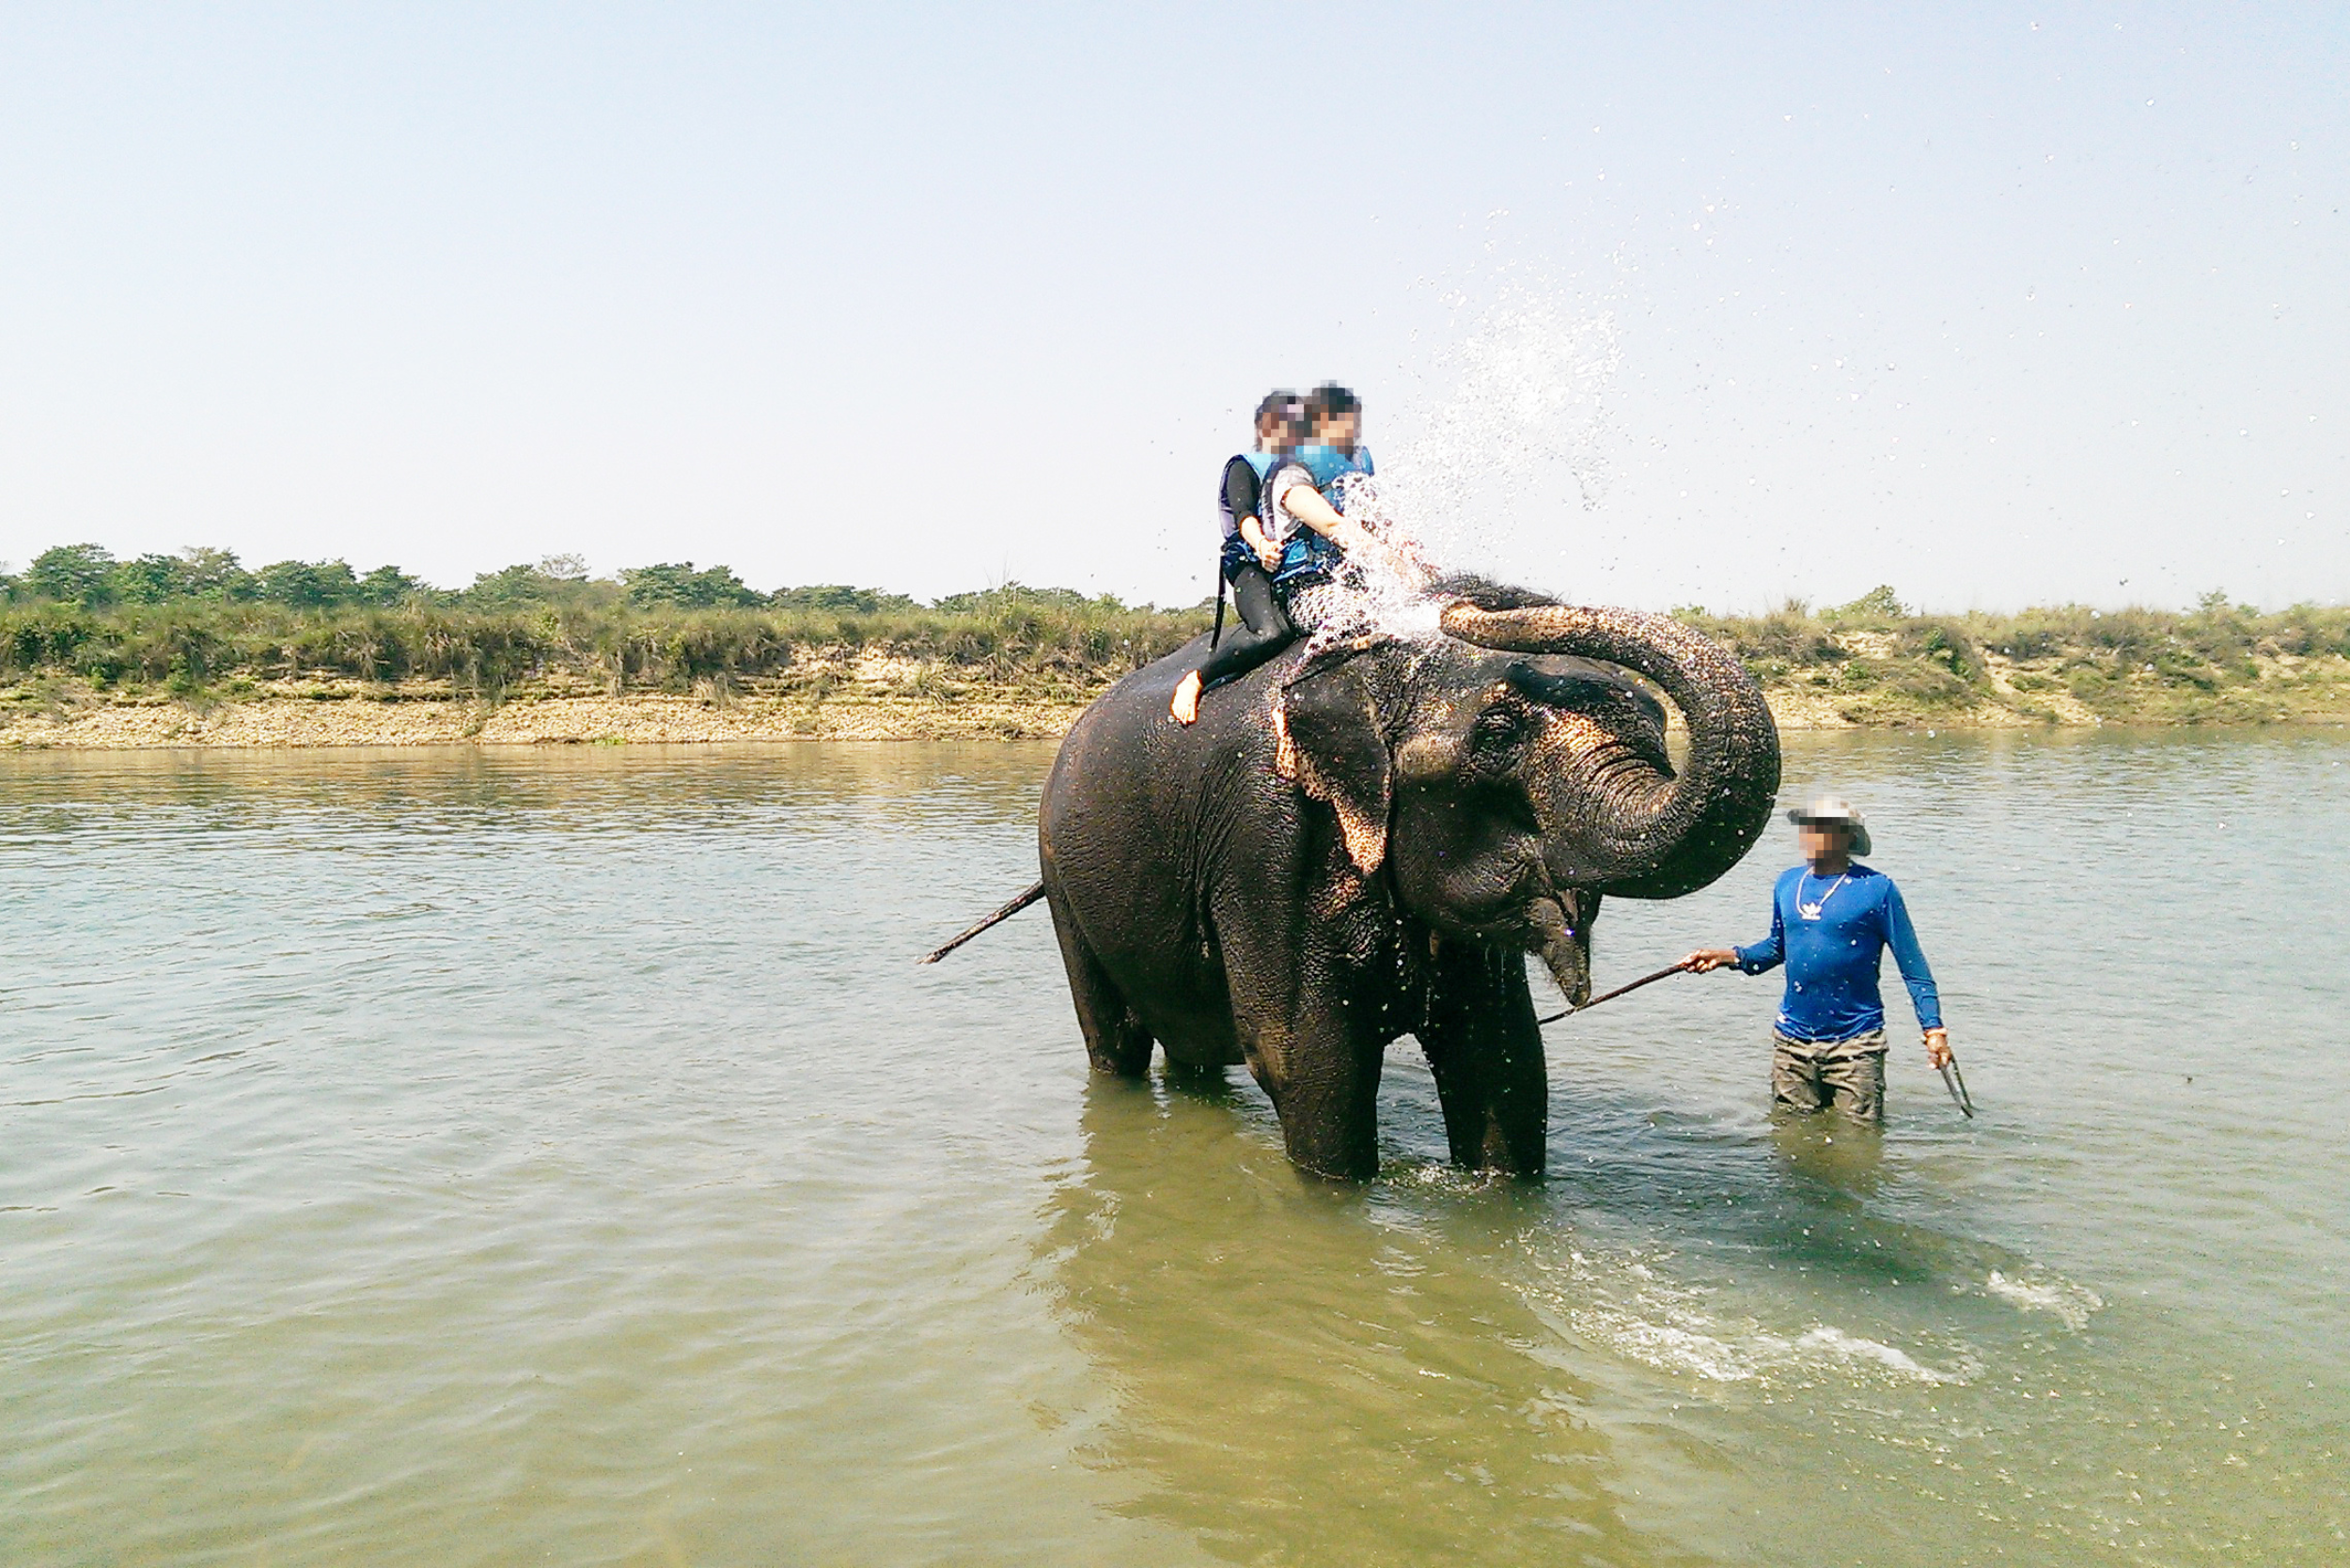 Turistas sobre el lomo de un elefante usado para baños